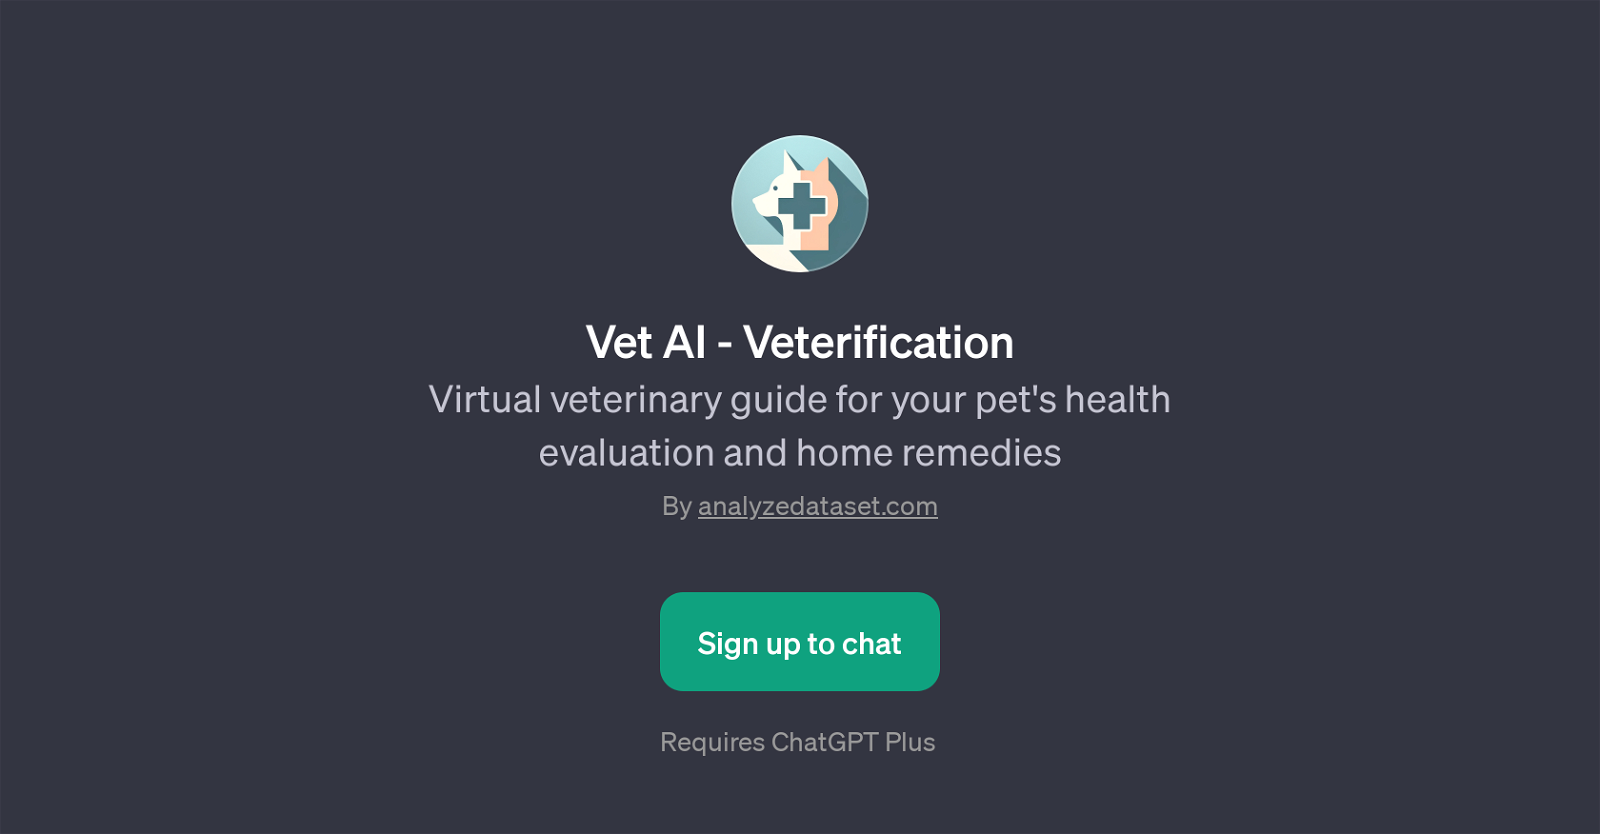 Vet AI - Veterification website